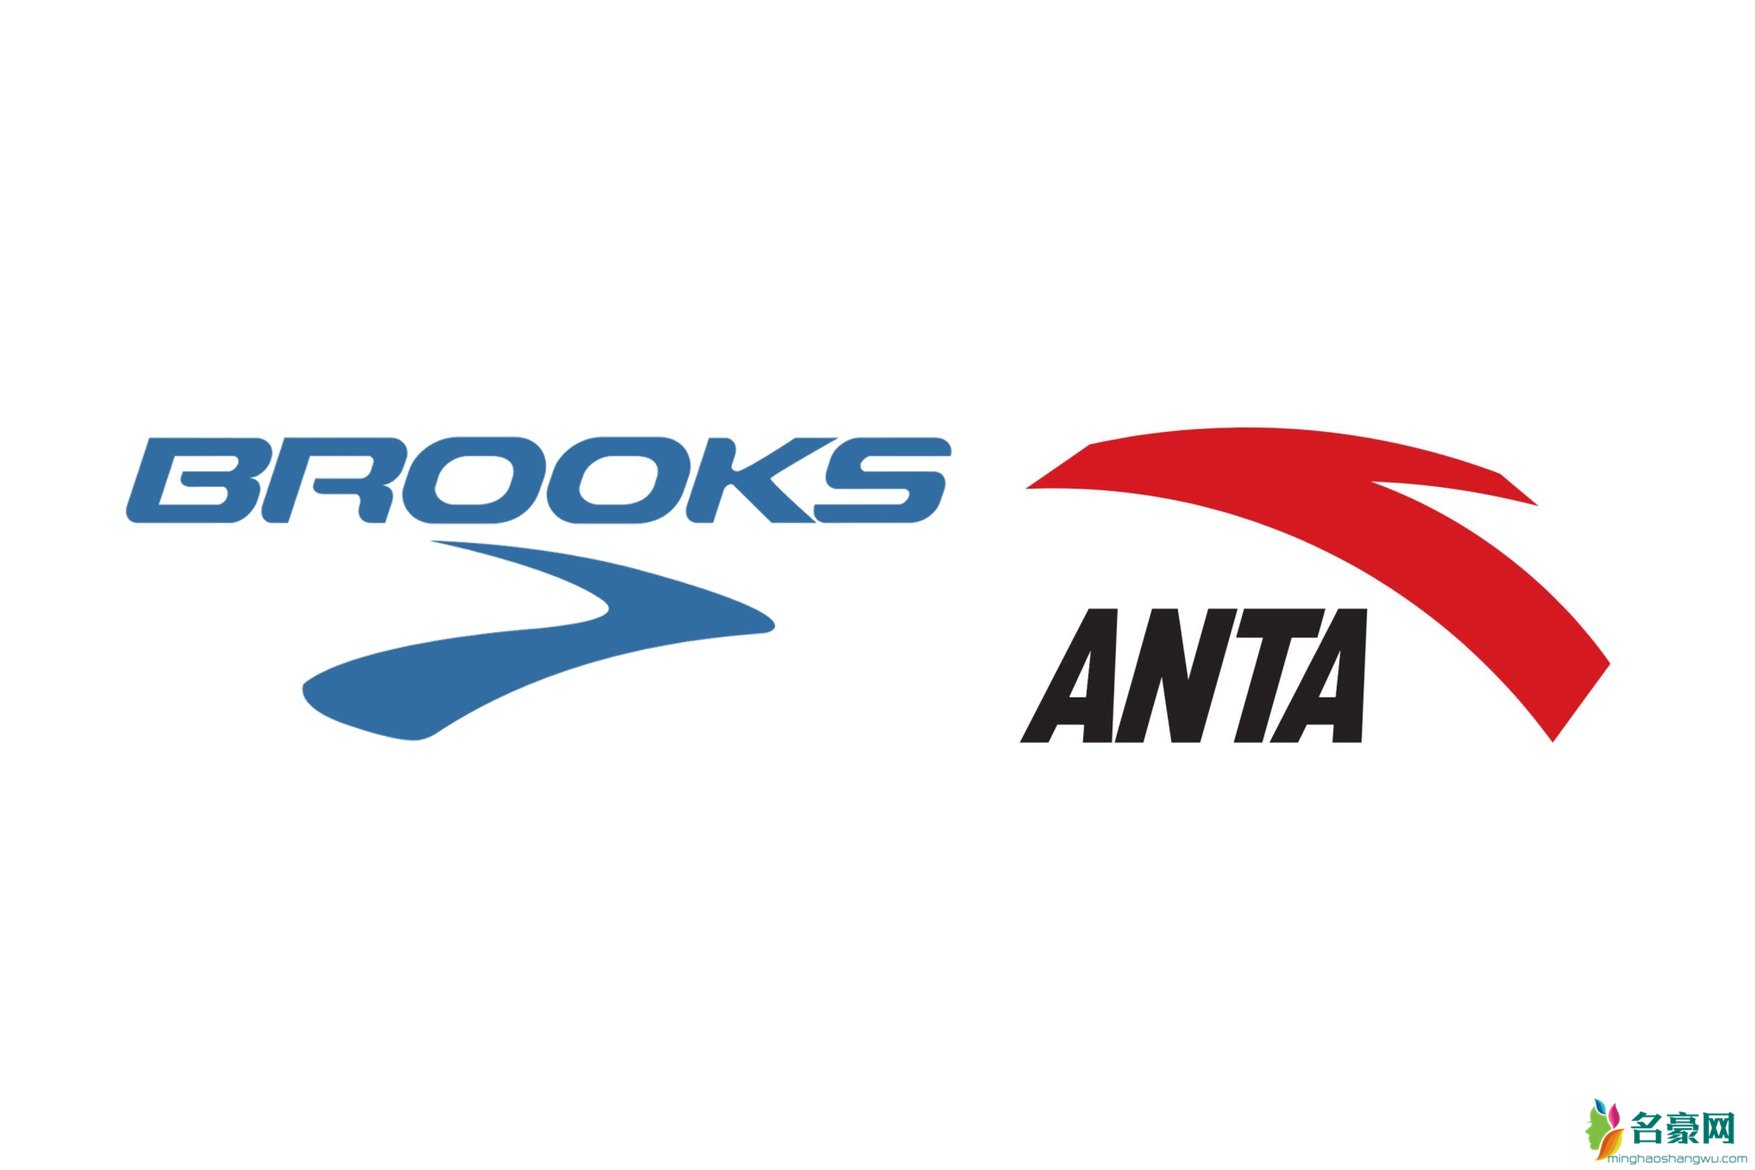 brooks将退出中国市场 ANTA胜诉Brooks商标侵权